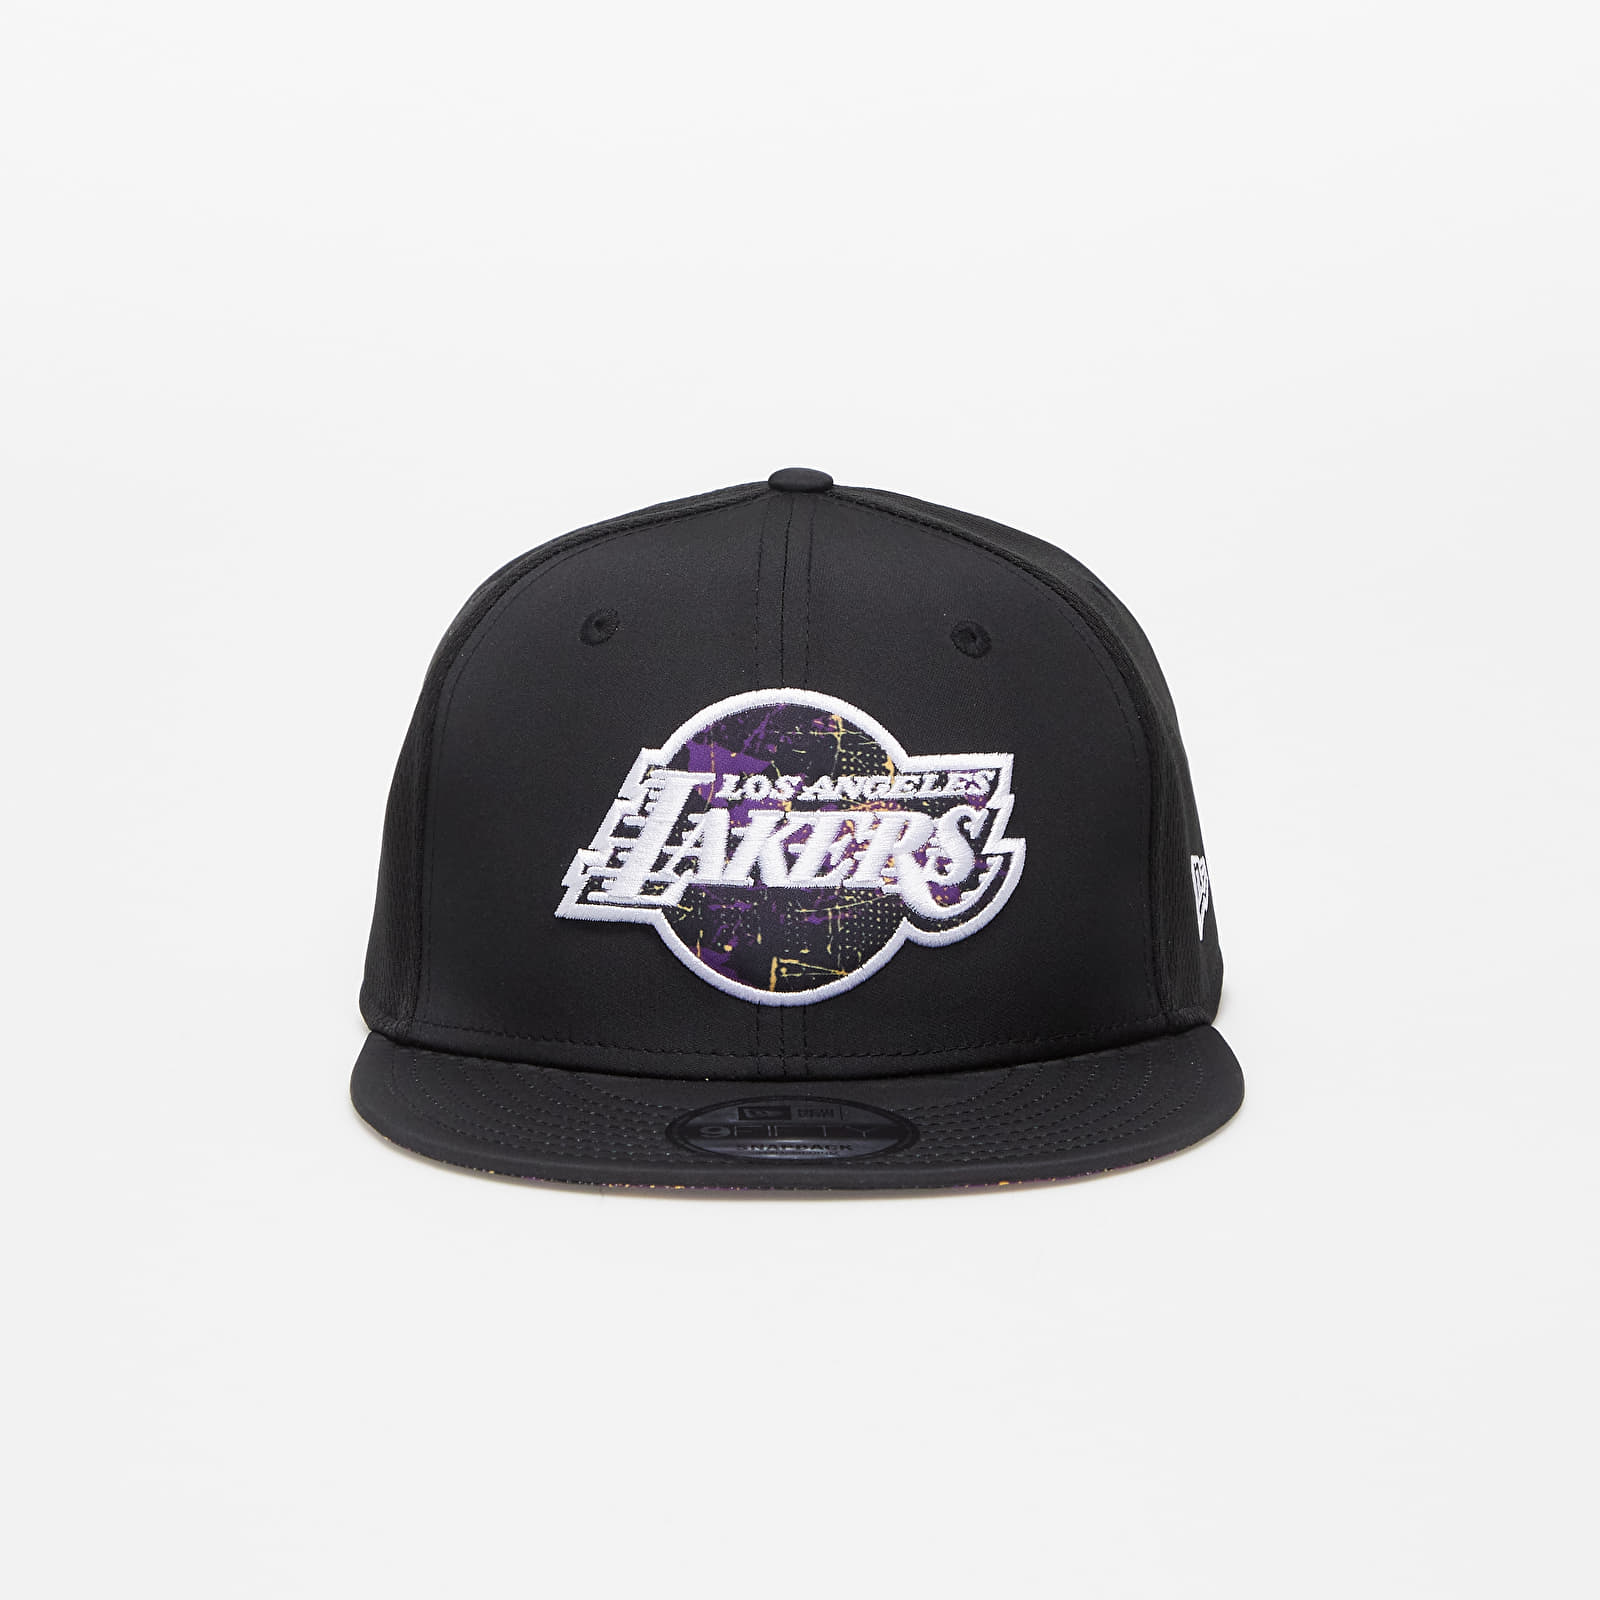 Caps New Era 950 Nba Print Infill 9Fifty Los Angeles Lakers Black